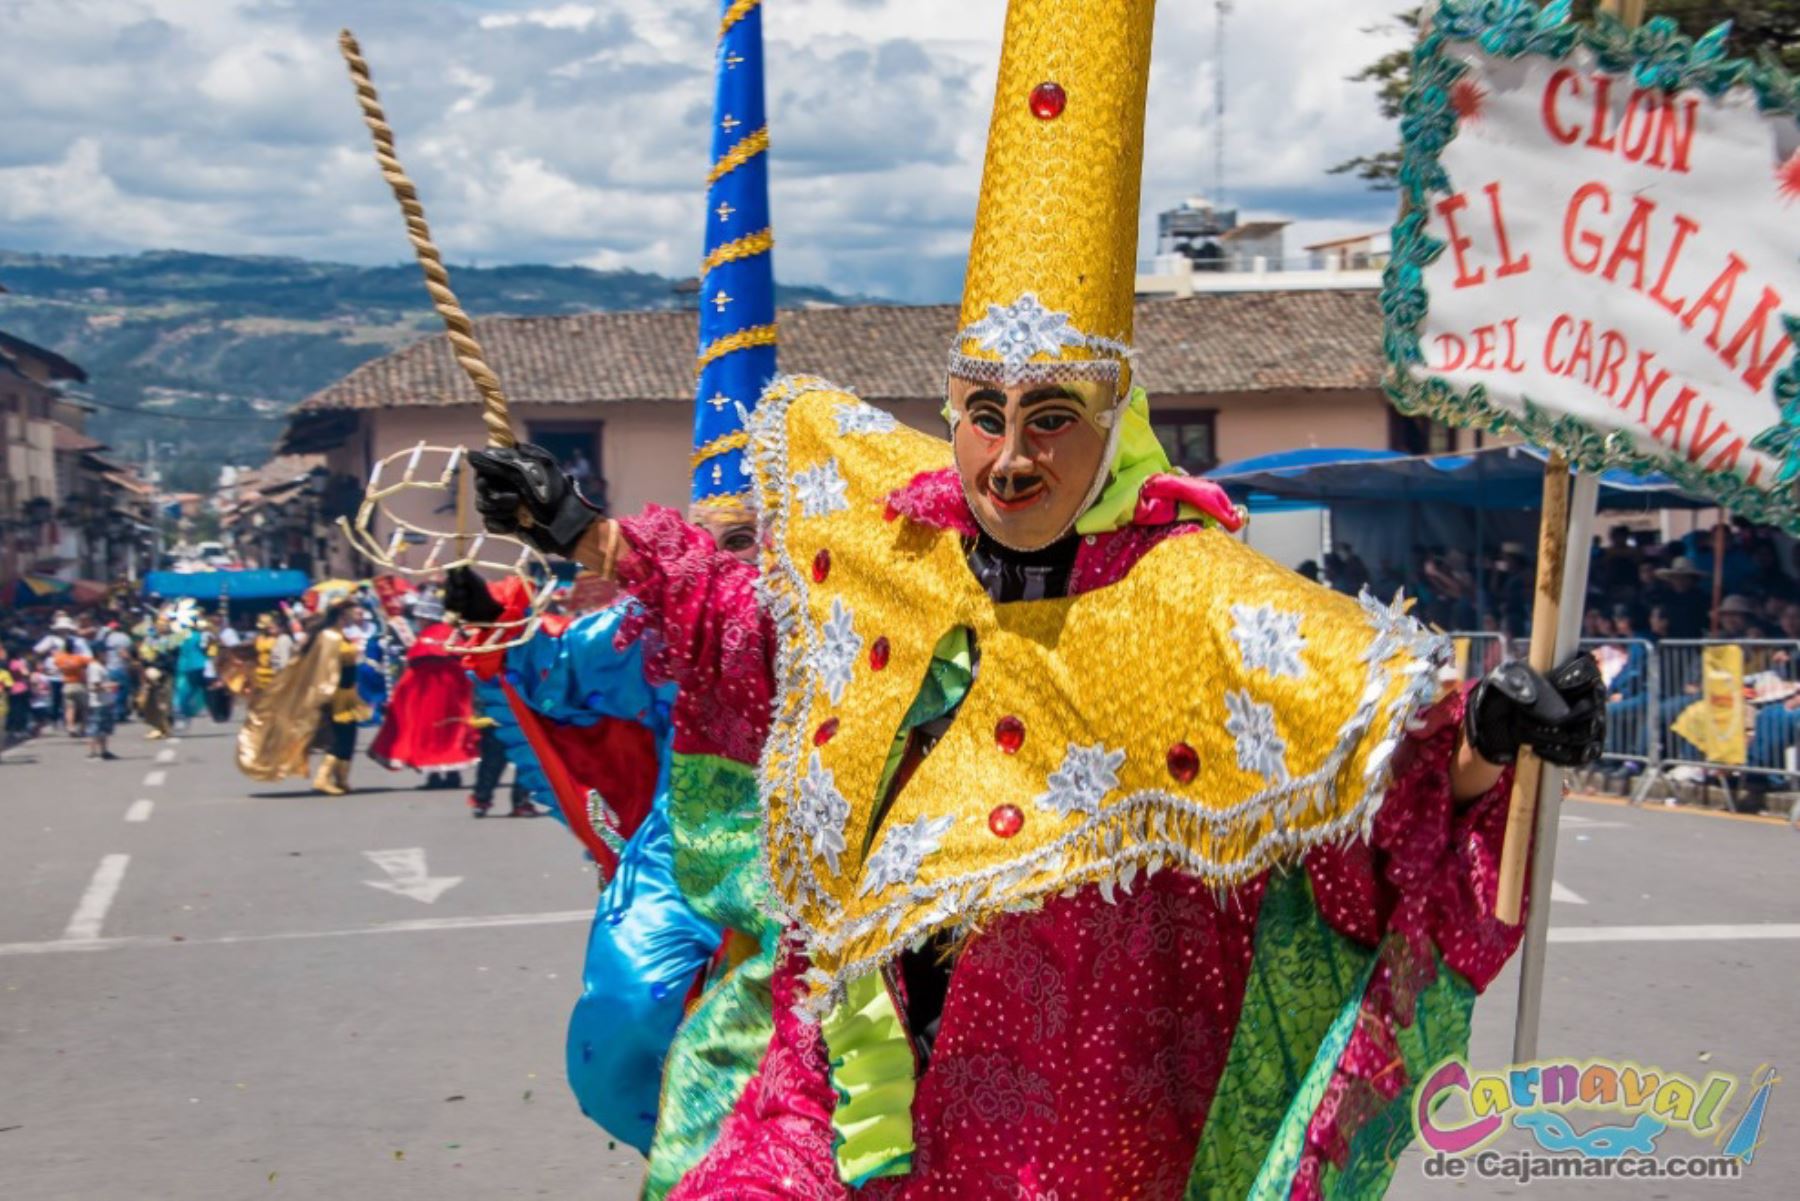 El Carnaval de Cajamarca es uno de los favoritos de los peruanos. Foto: INTERNET/Medios